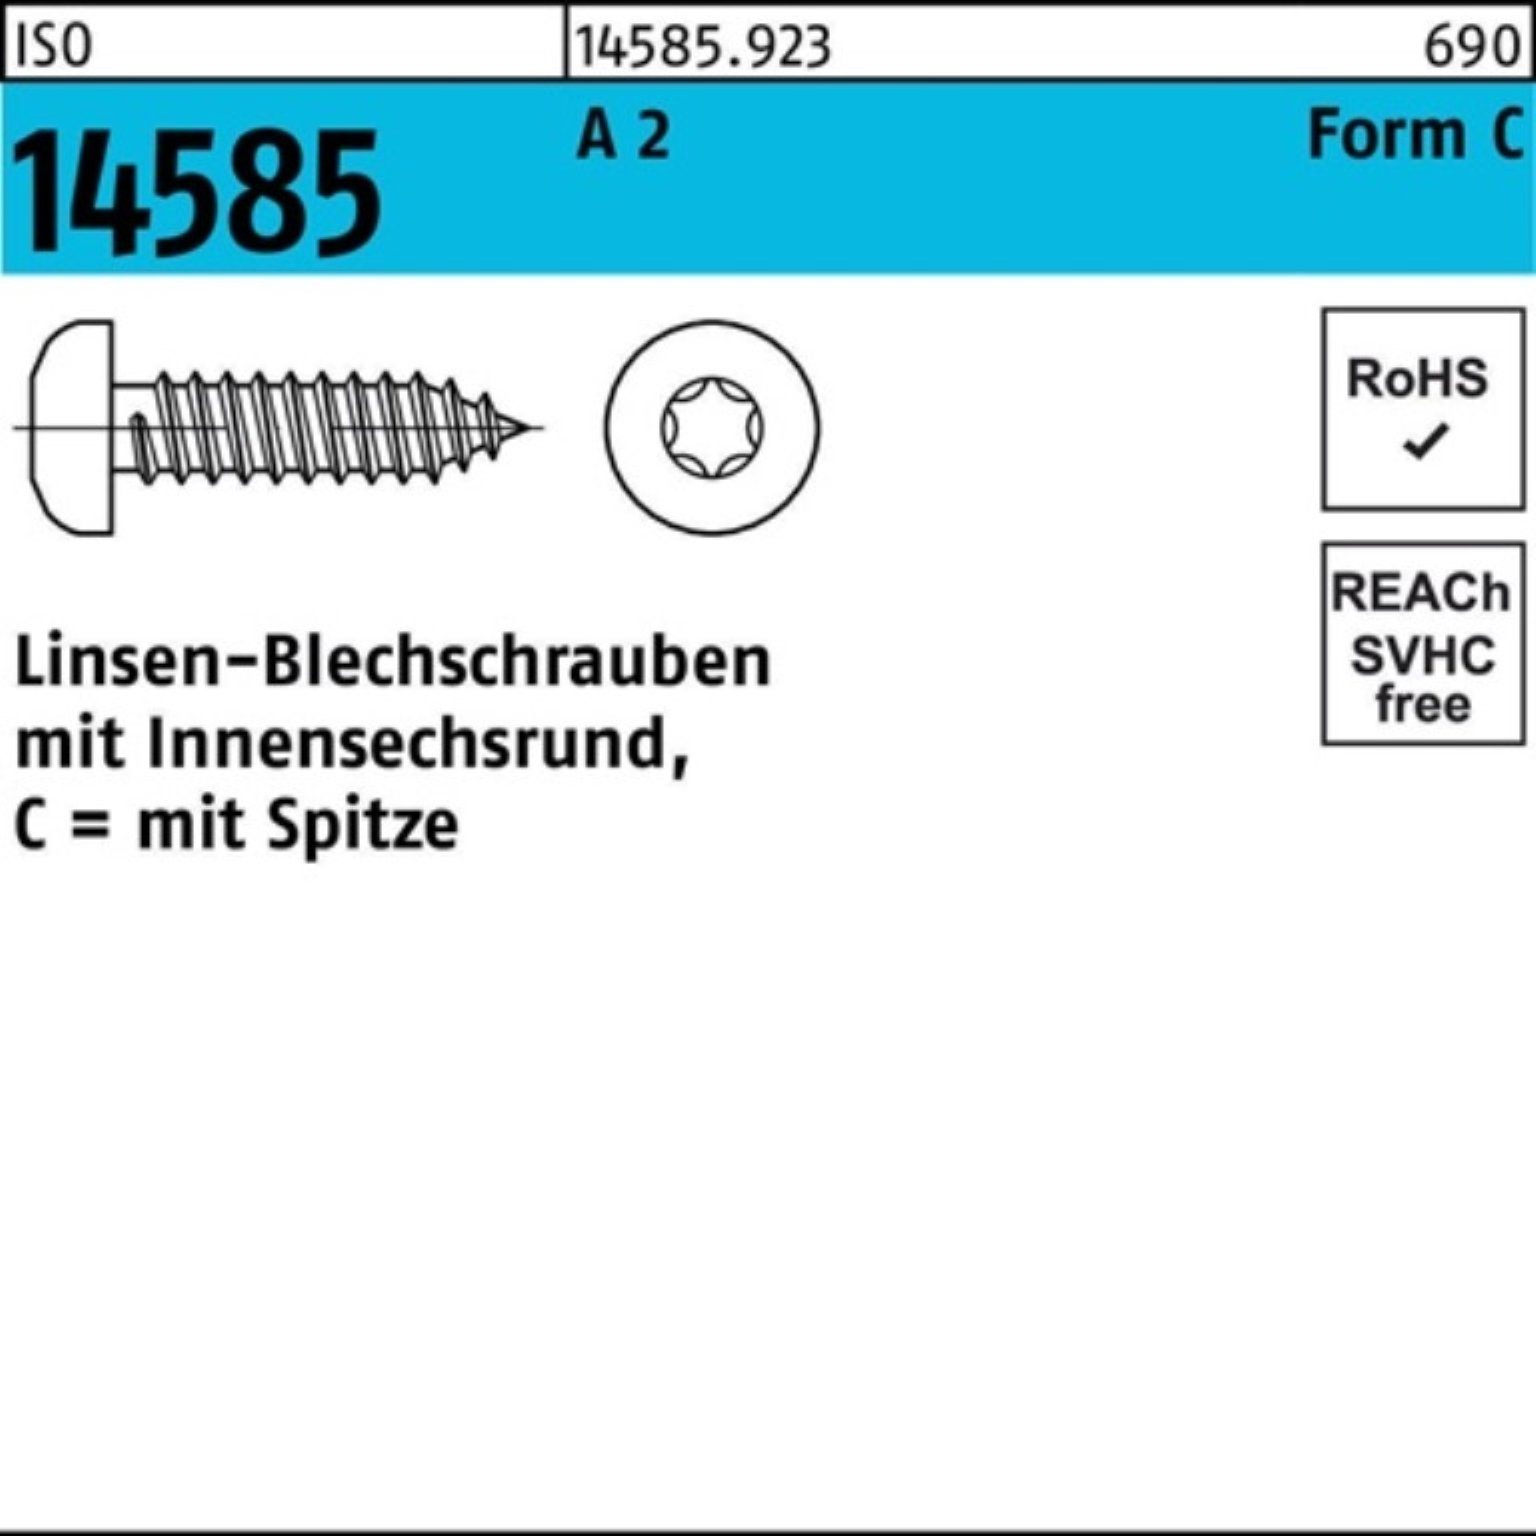 Reyher Blechschraube 1000er Pack Linsenblechschraube 14585 ISO A 1000 2,9x -C ISR 25 T10 2